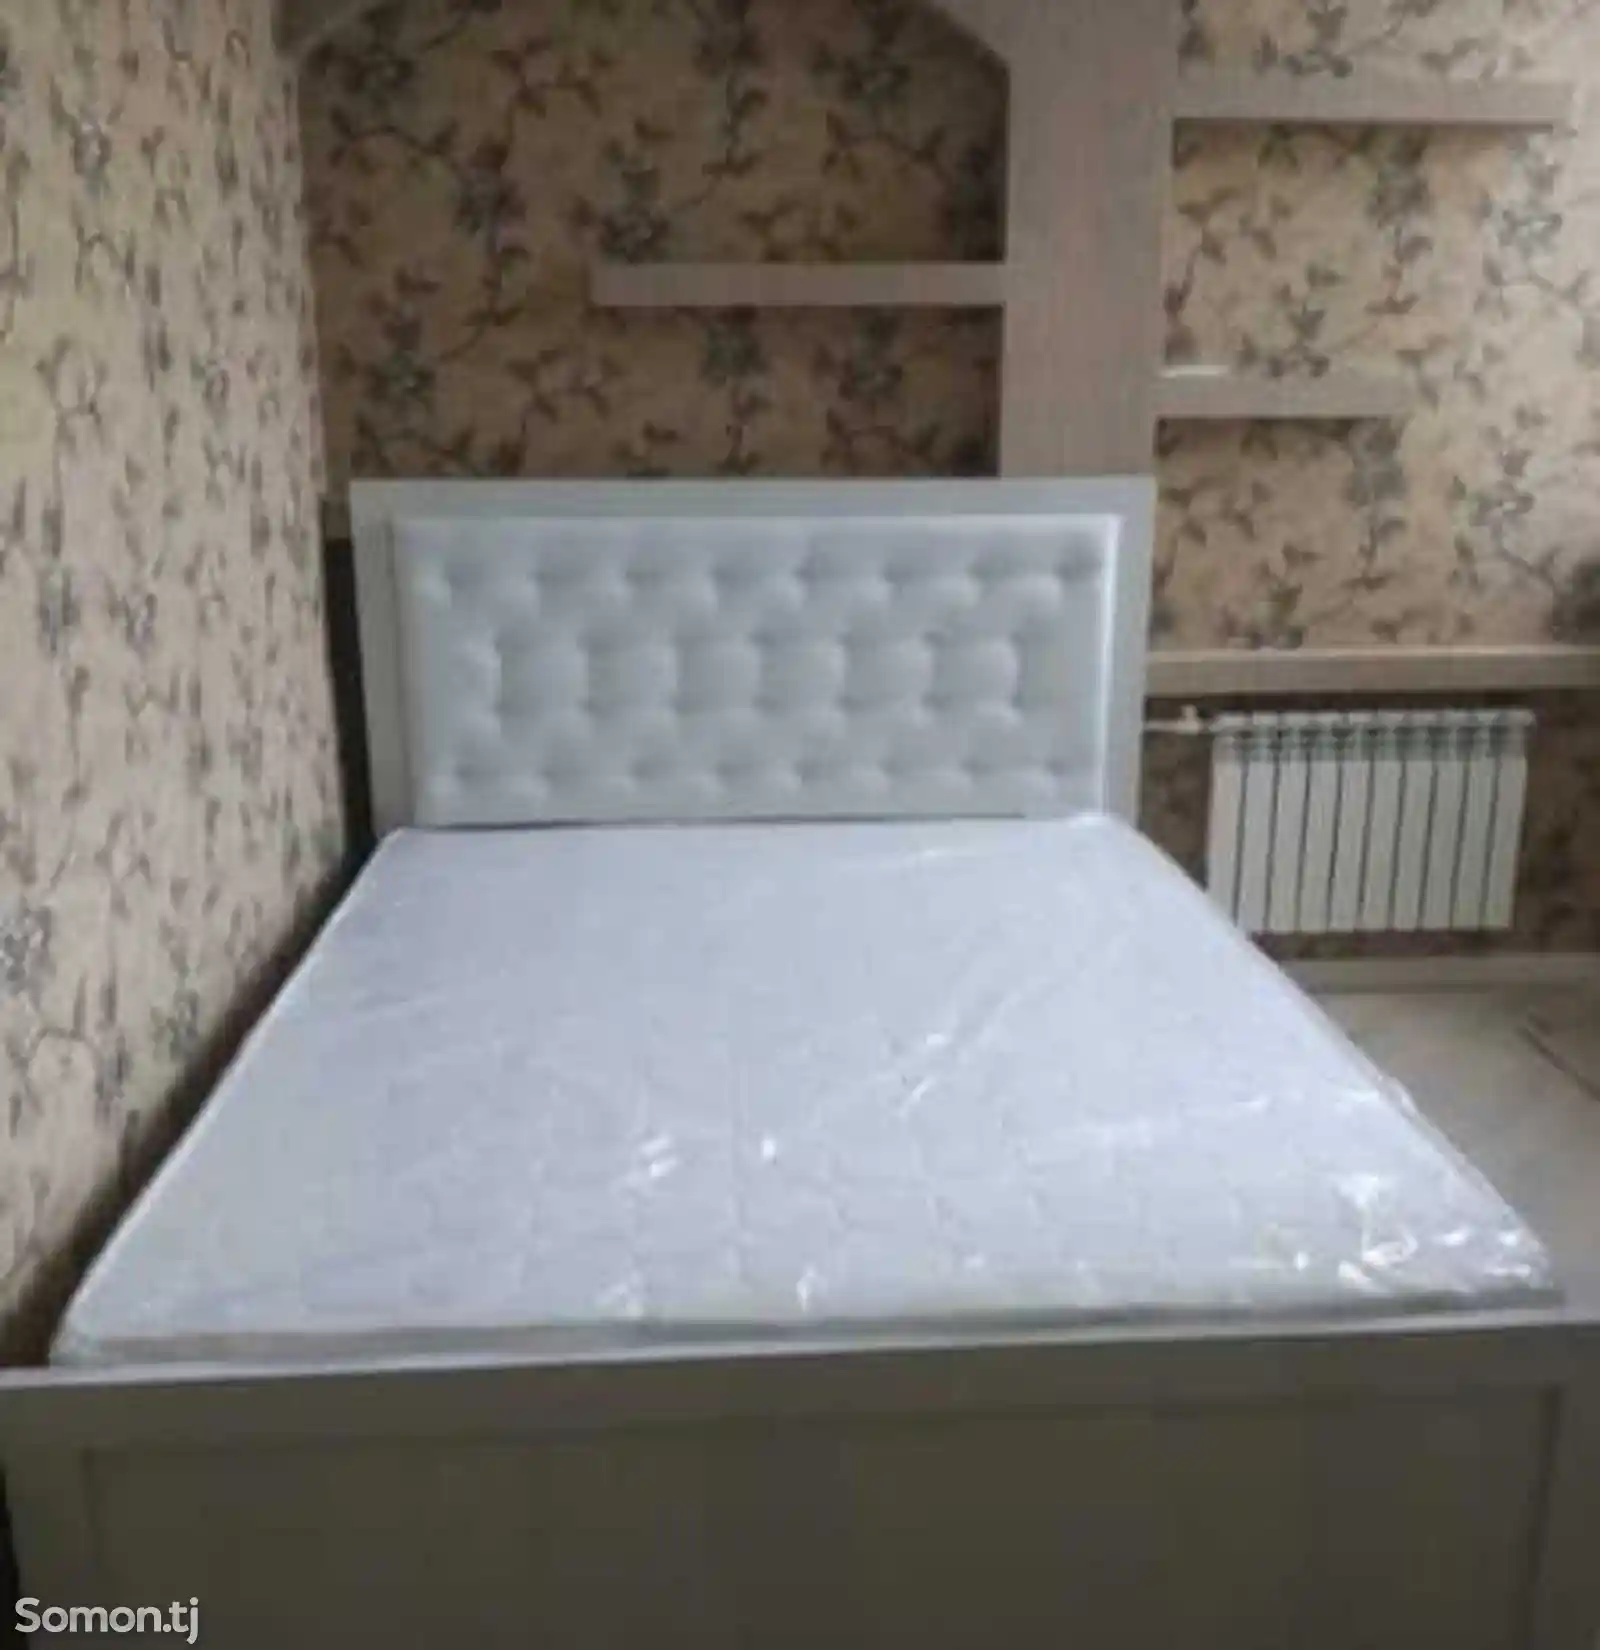 Кровать с медицинским матрасом